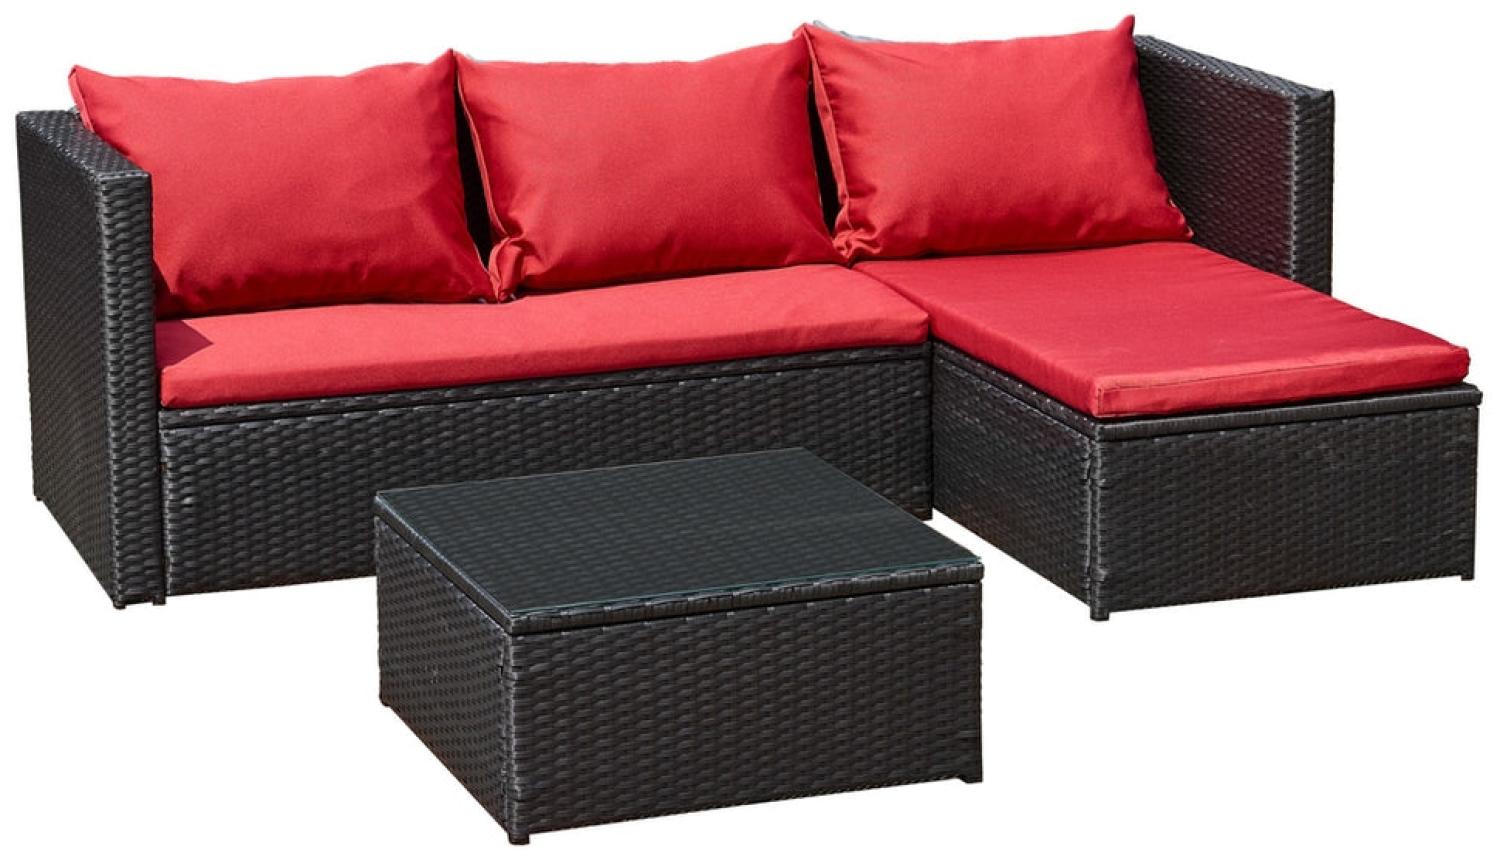 Luxus Premium Garten Lounge schwarz rot Esstisch Polyrattan SET Sitzgruppe Bild 1